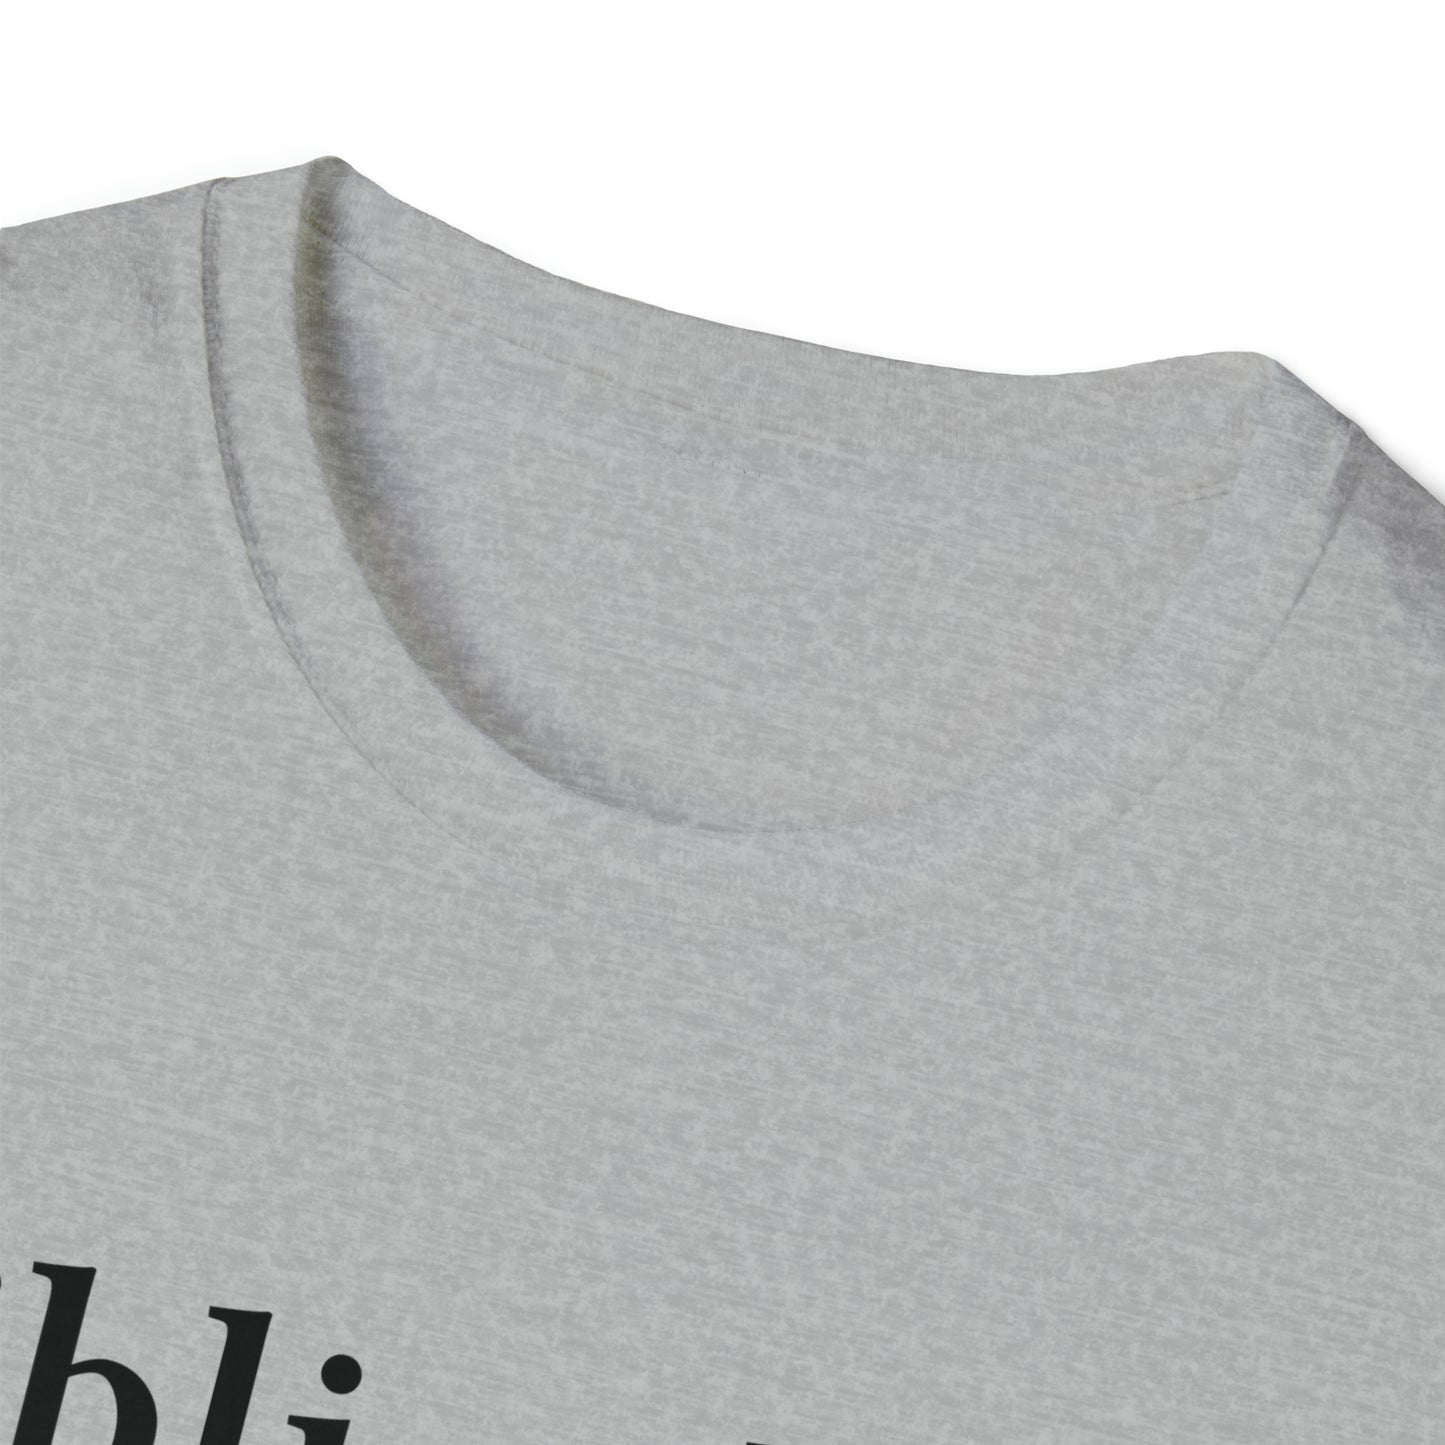 "Bibliophile" Softstyle T-Shirt